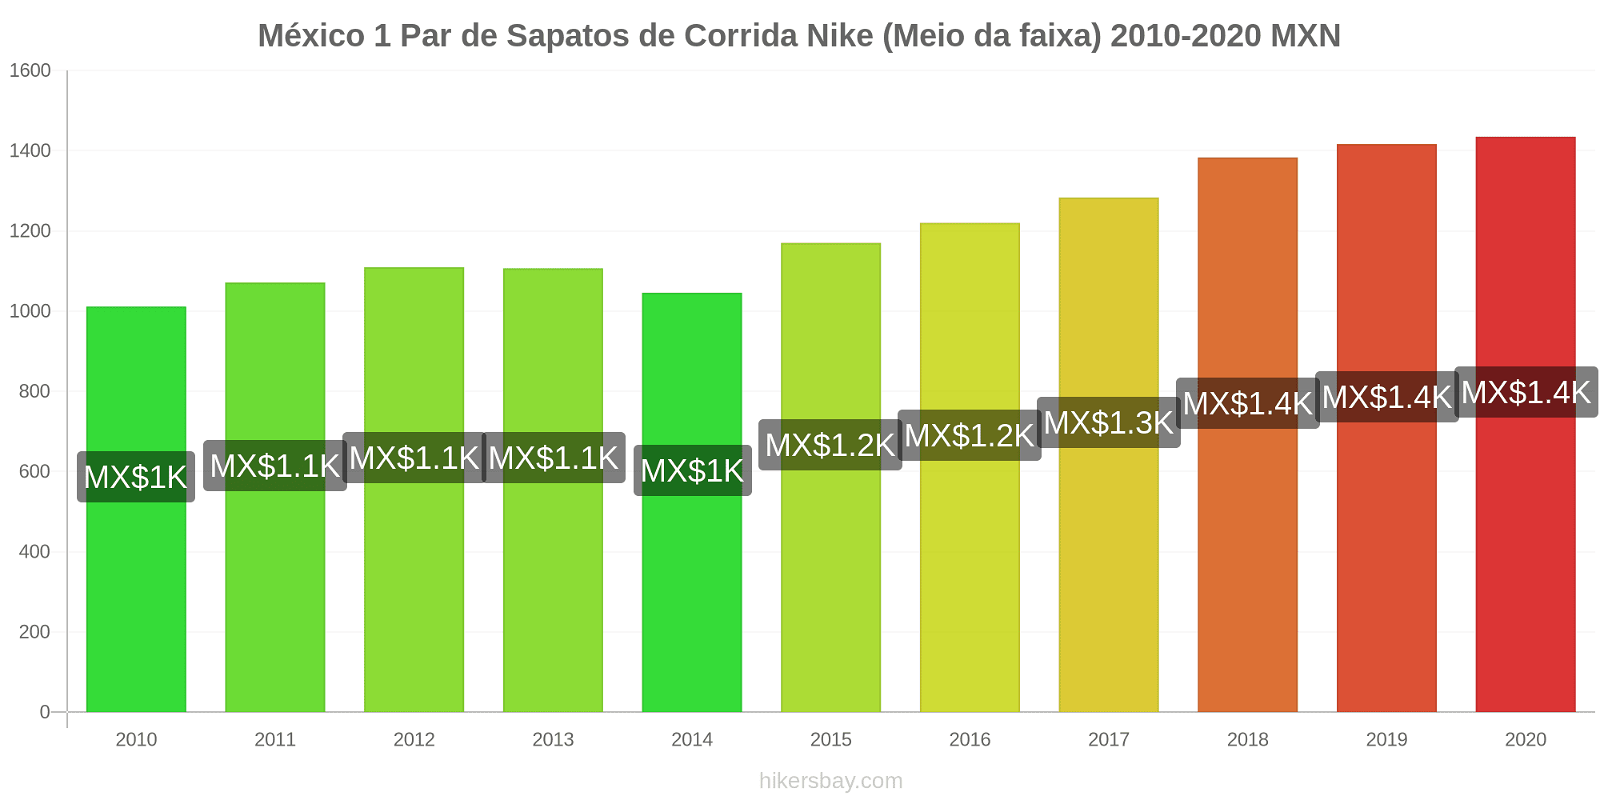 México variação de preço 1 par de tênis Nike (mid-range) hikersbay.com